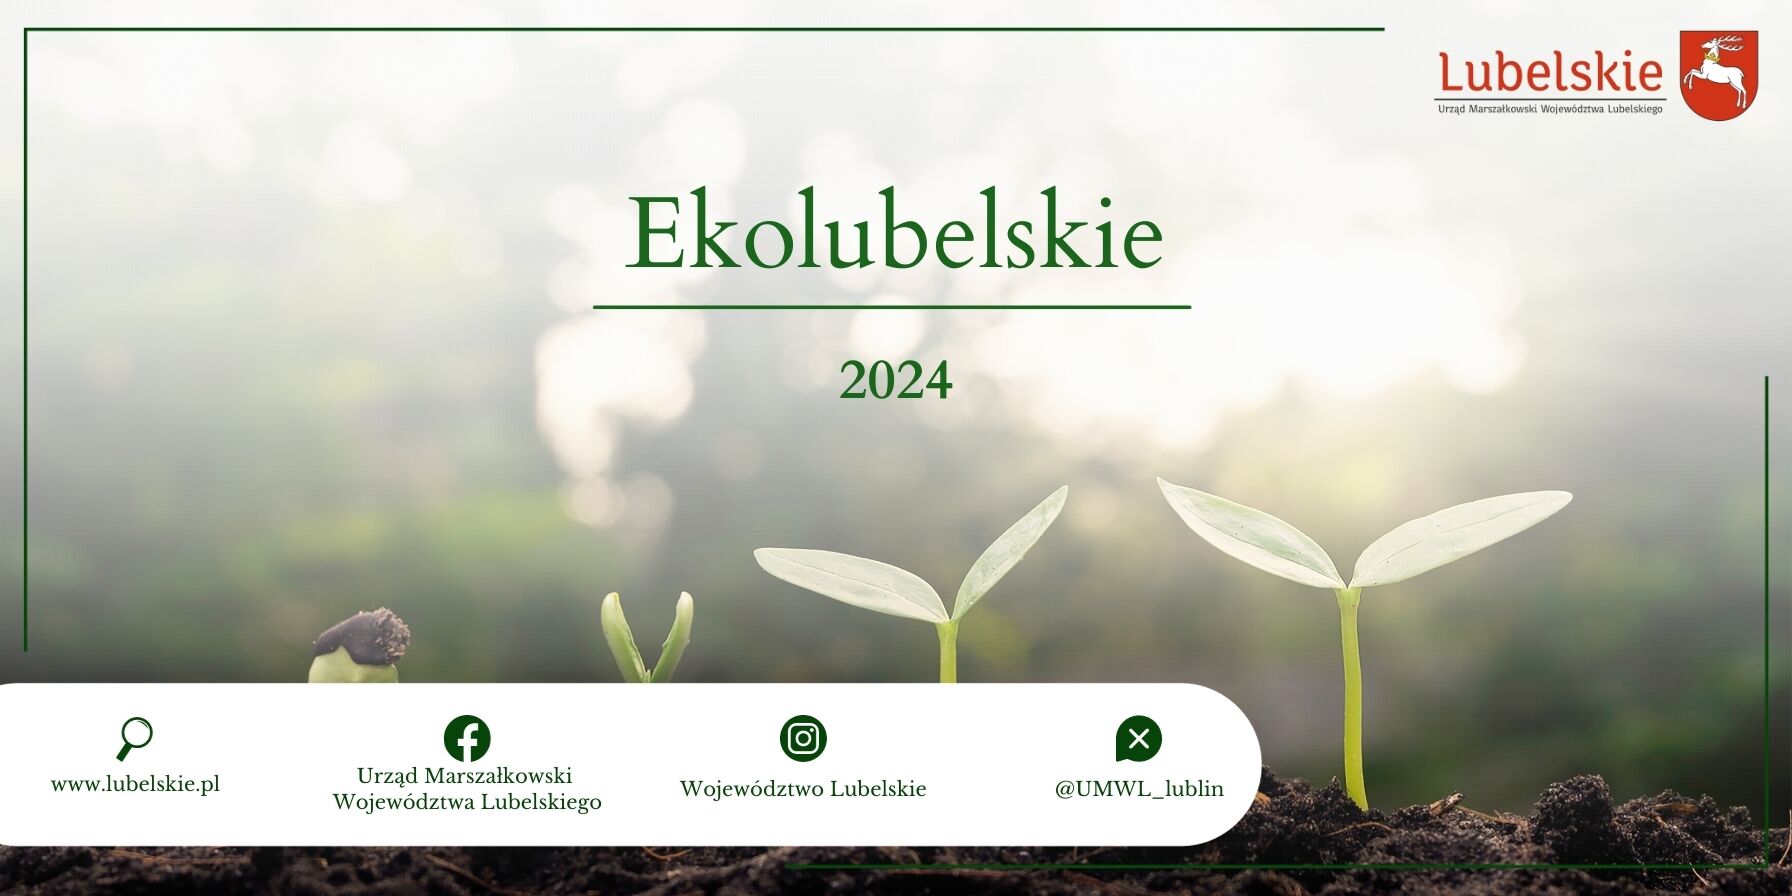 Zdjęcie przedstawia trzy młode rośliny ustawione w linii na tle mglistego lasu z tekstem "Ekolubelskie 2024" oraz logotypami i adresem internetowym Urzędu Marszałkowskiego Województwa Lubelskiego.